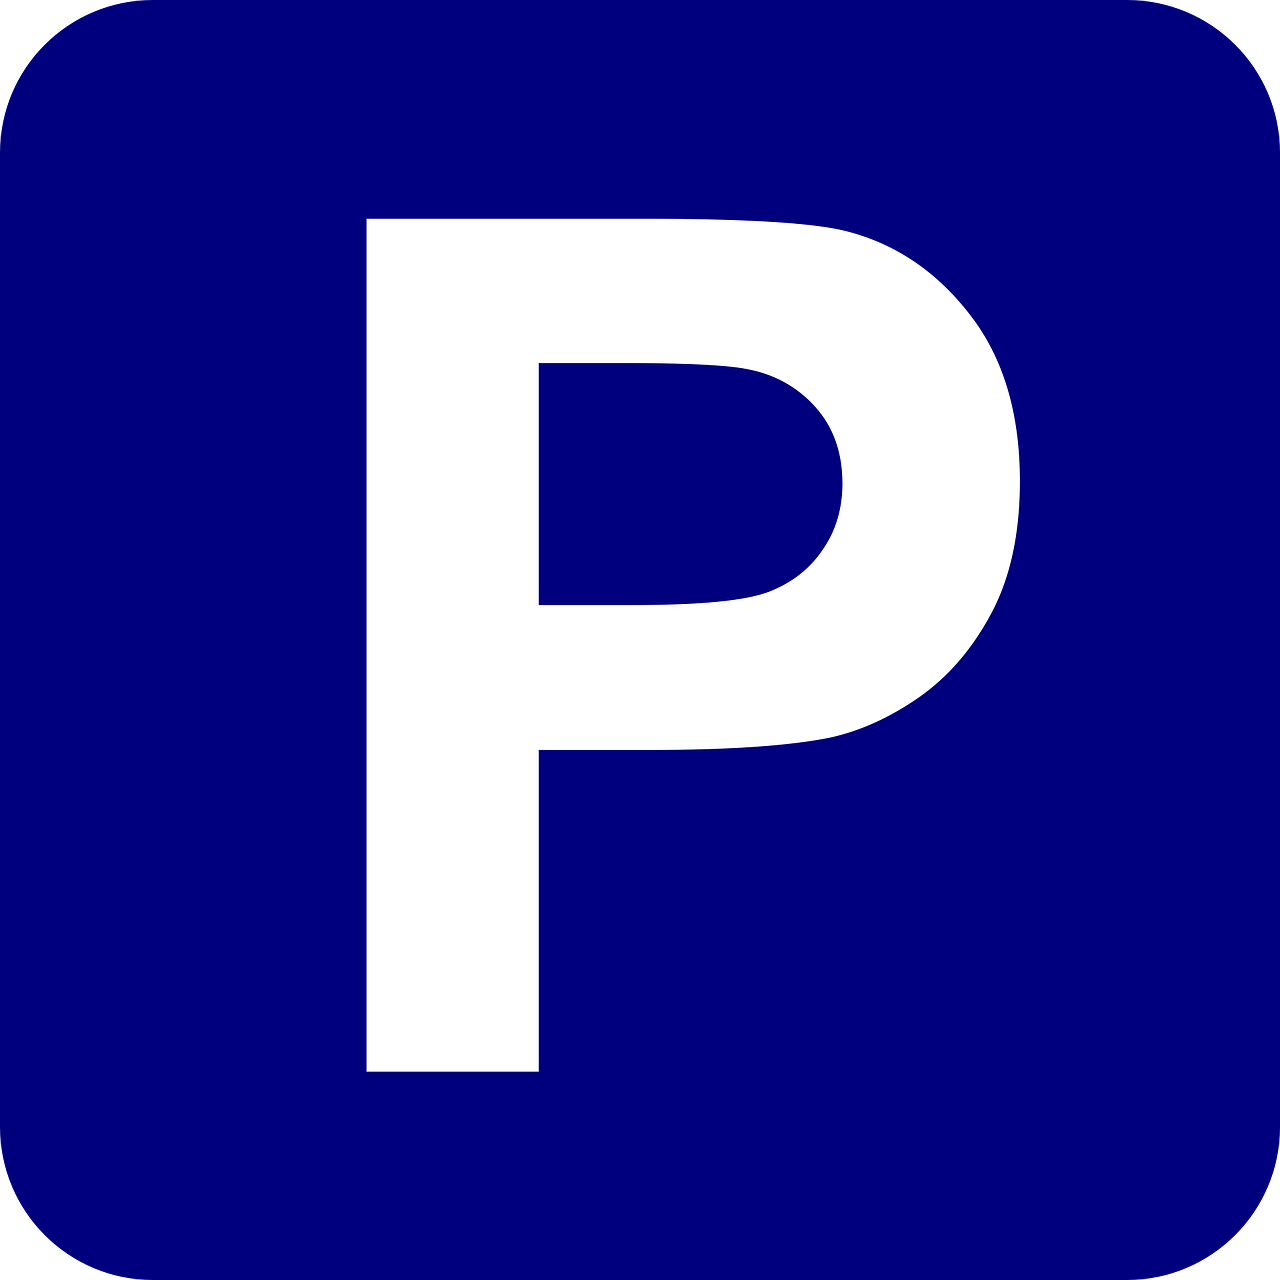 Parking  - NICE